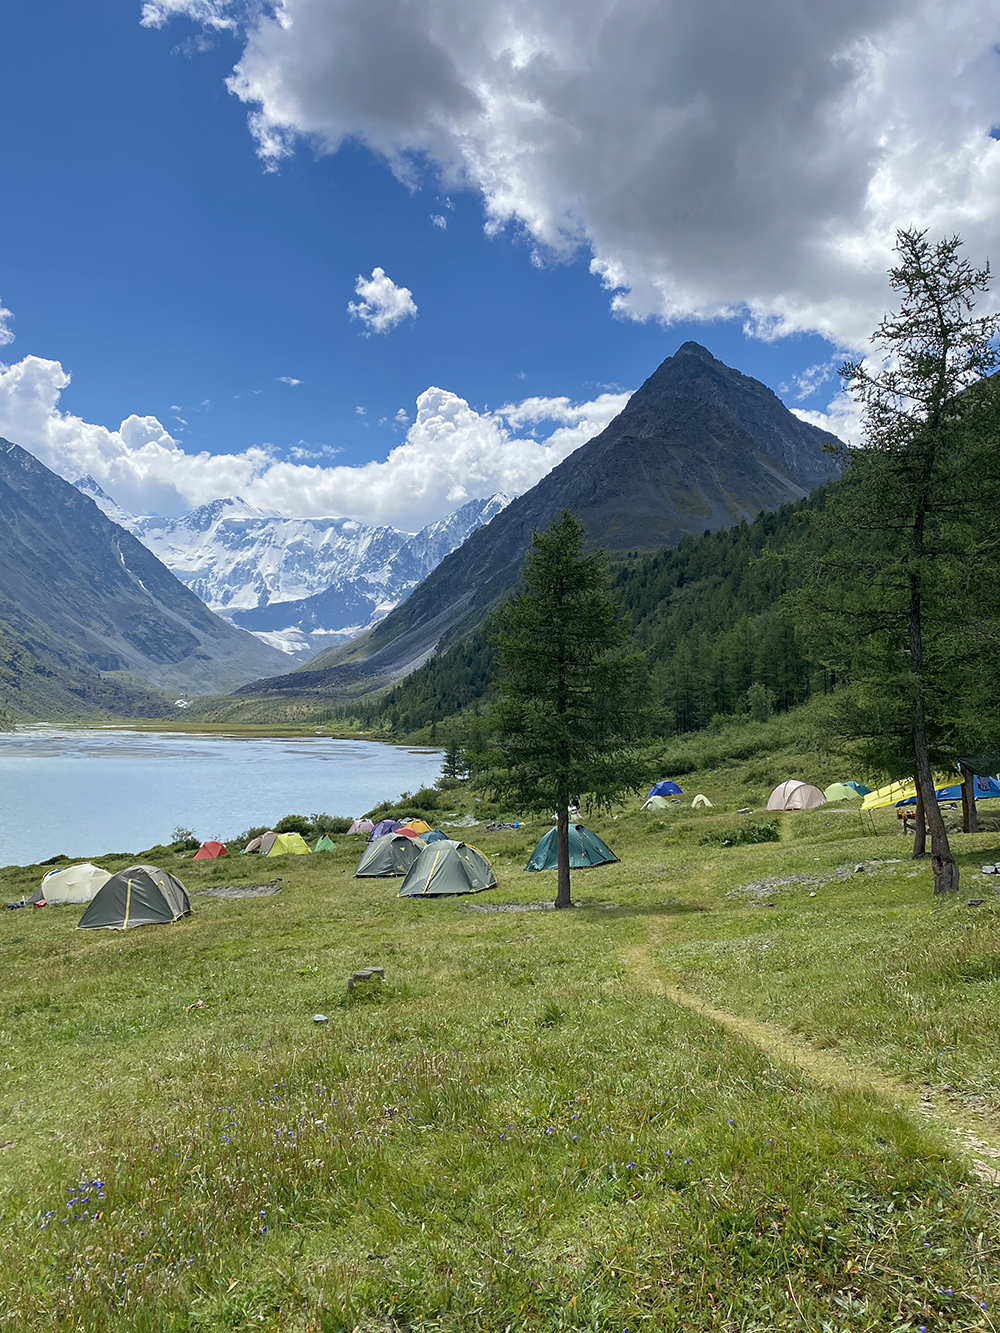 Вид на Белуху — одну из высочайших горных вершин России. Это наш палаточный лагерь. Непередаваемое ощущение, когда поутру, выползая из палатки, видишь такое